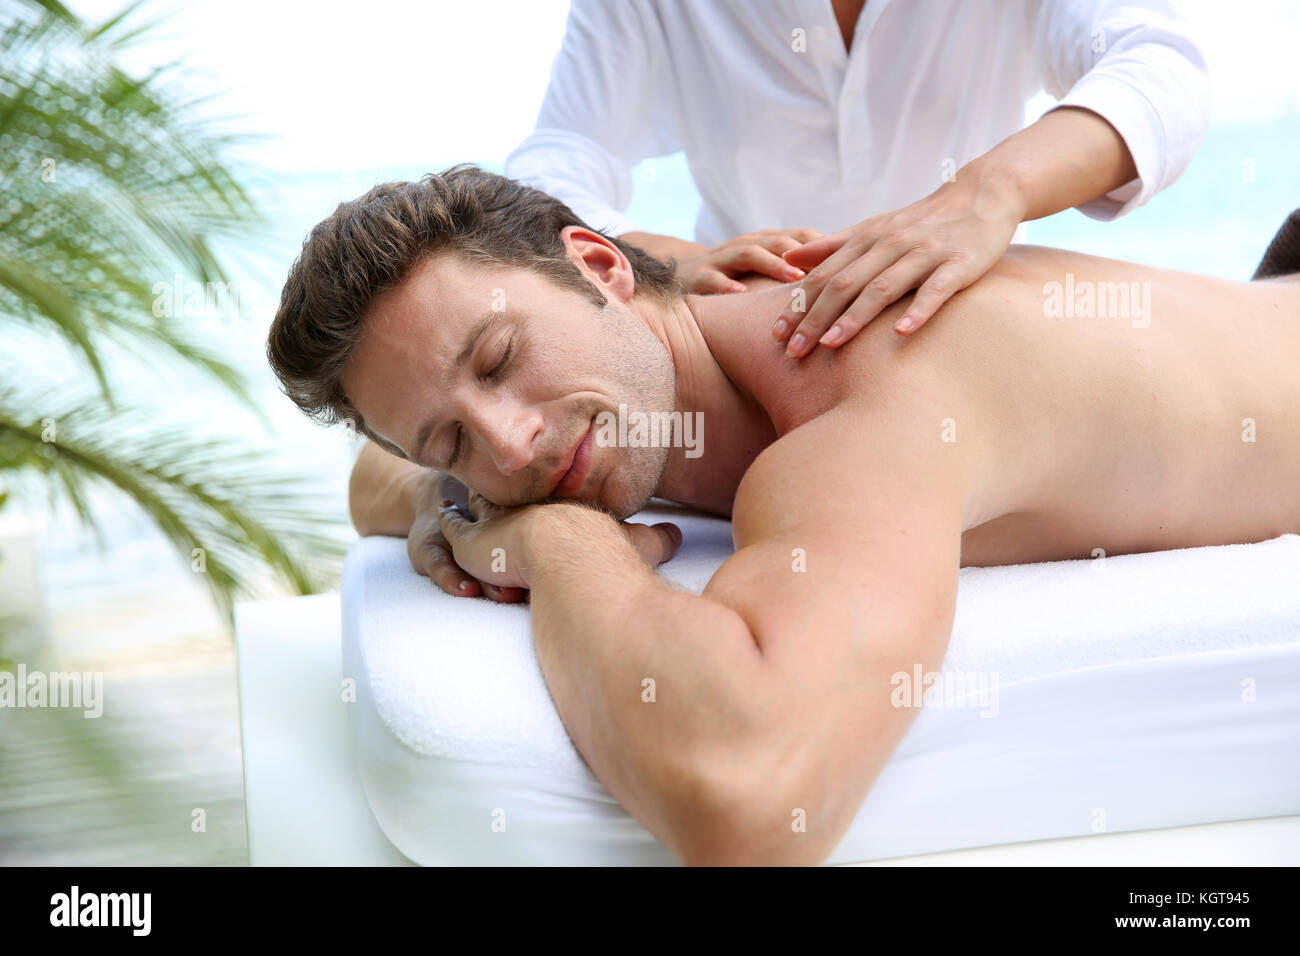 Bel homme allongé sur un lit de massage Banque D'Images